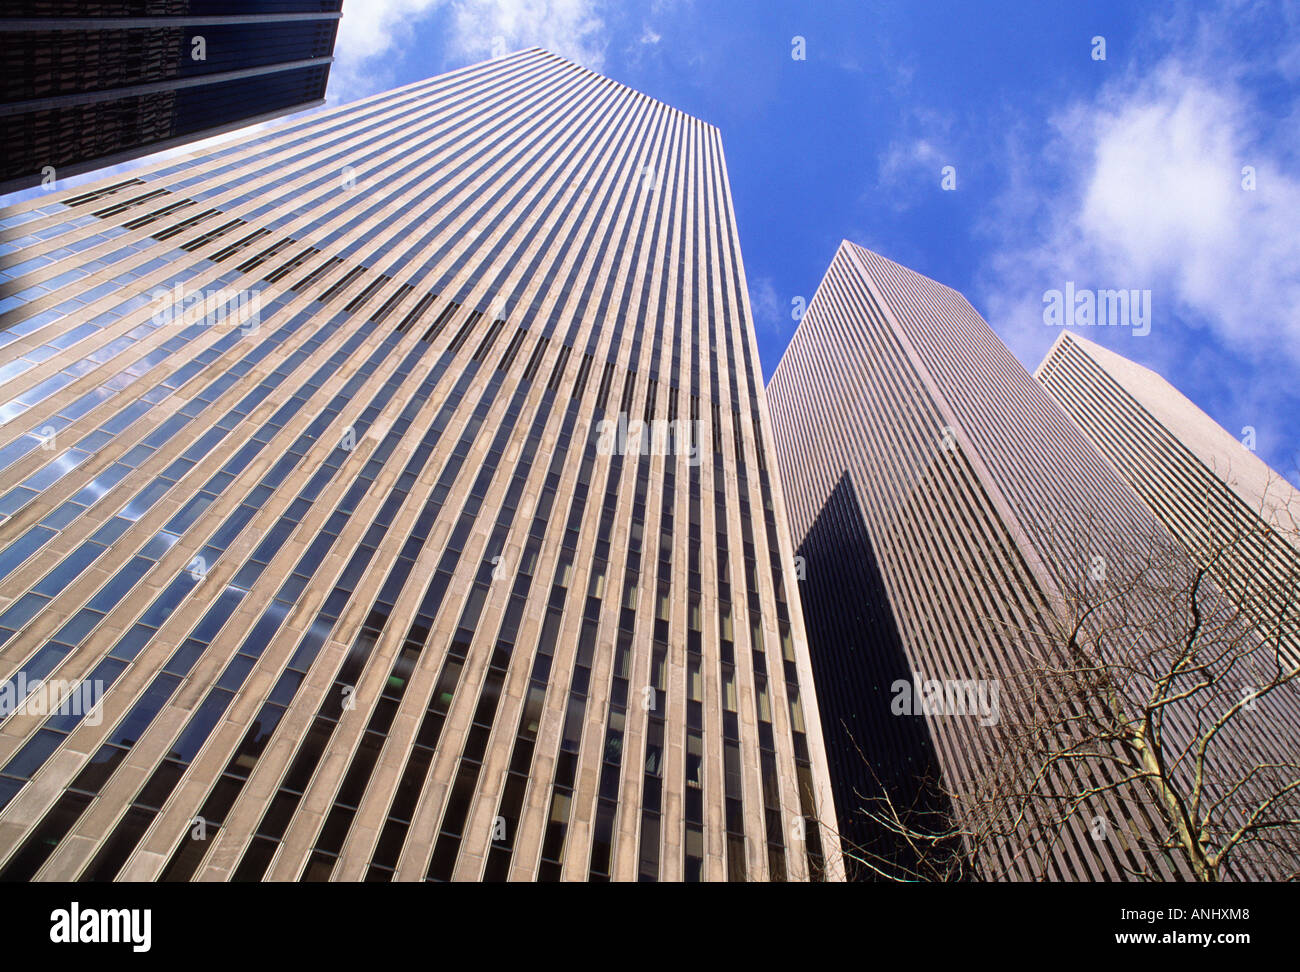 Complesso Rockefeller Center di New York City. Urban Midtown Manhattan architettura moderna. Edifici di uffici sulla Sixth Avenue. I grattacieli dello skyline degli anni '60. Foto Stock